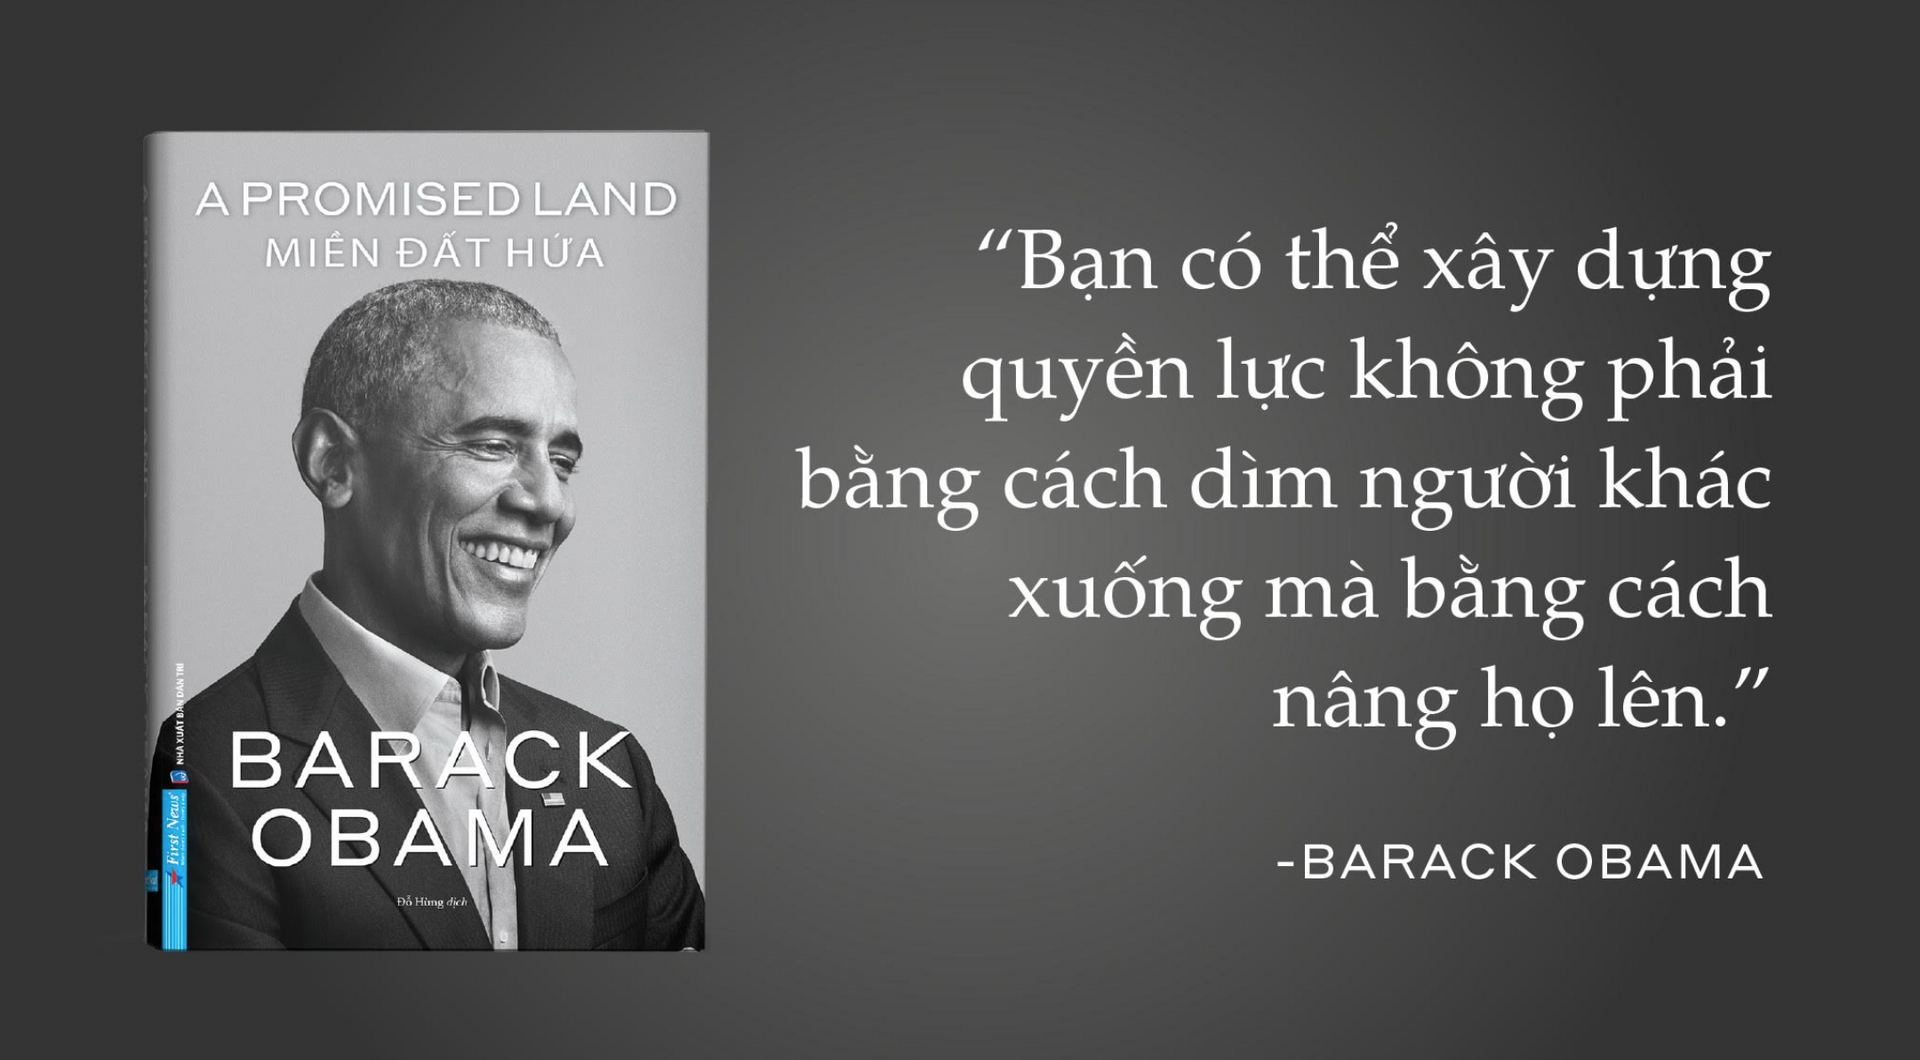 Hồi ký nổi tiếng của cựu Tổng thống Obama xuất bản tại Việt Nam - 1